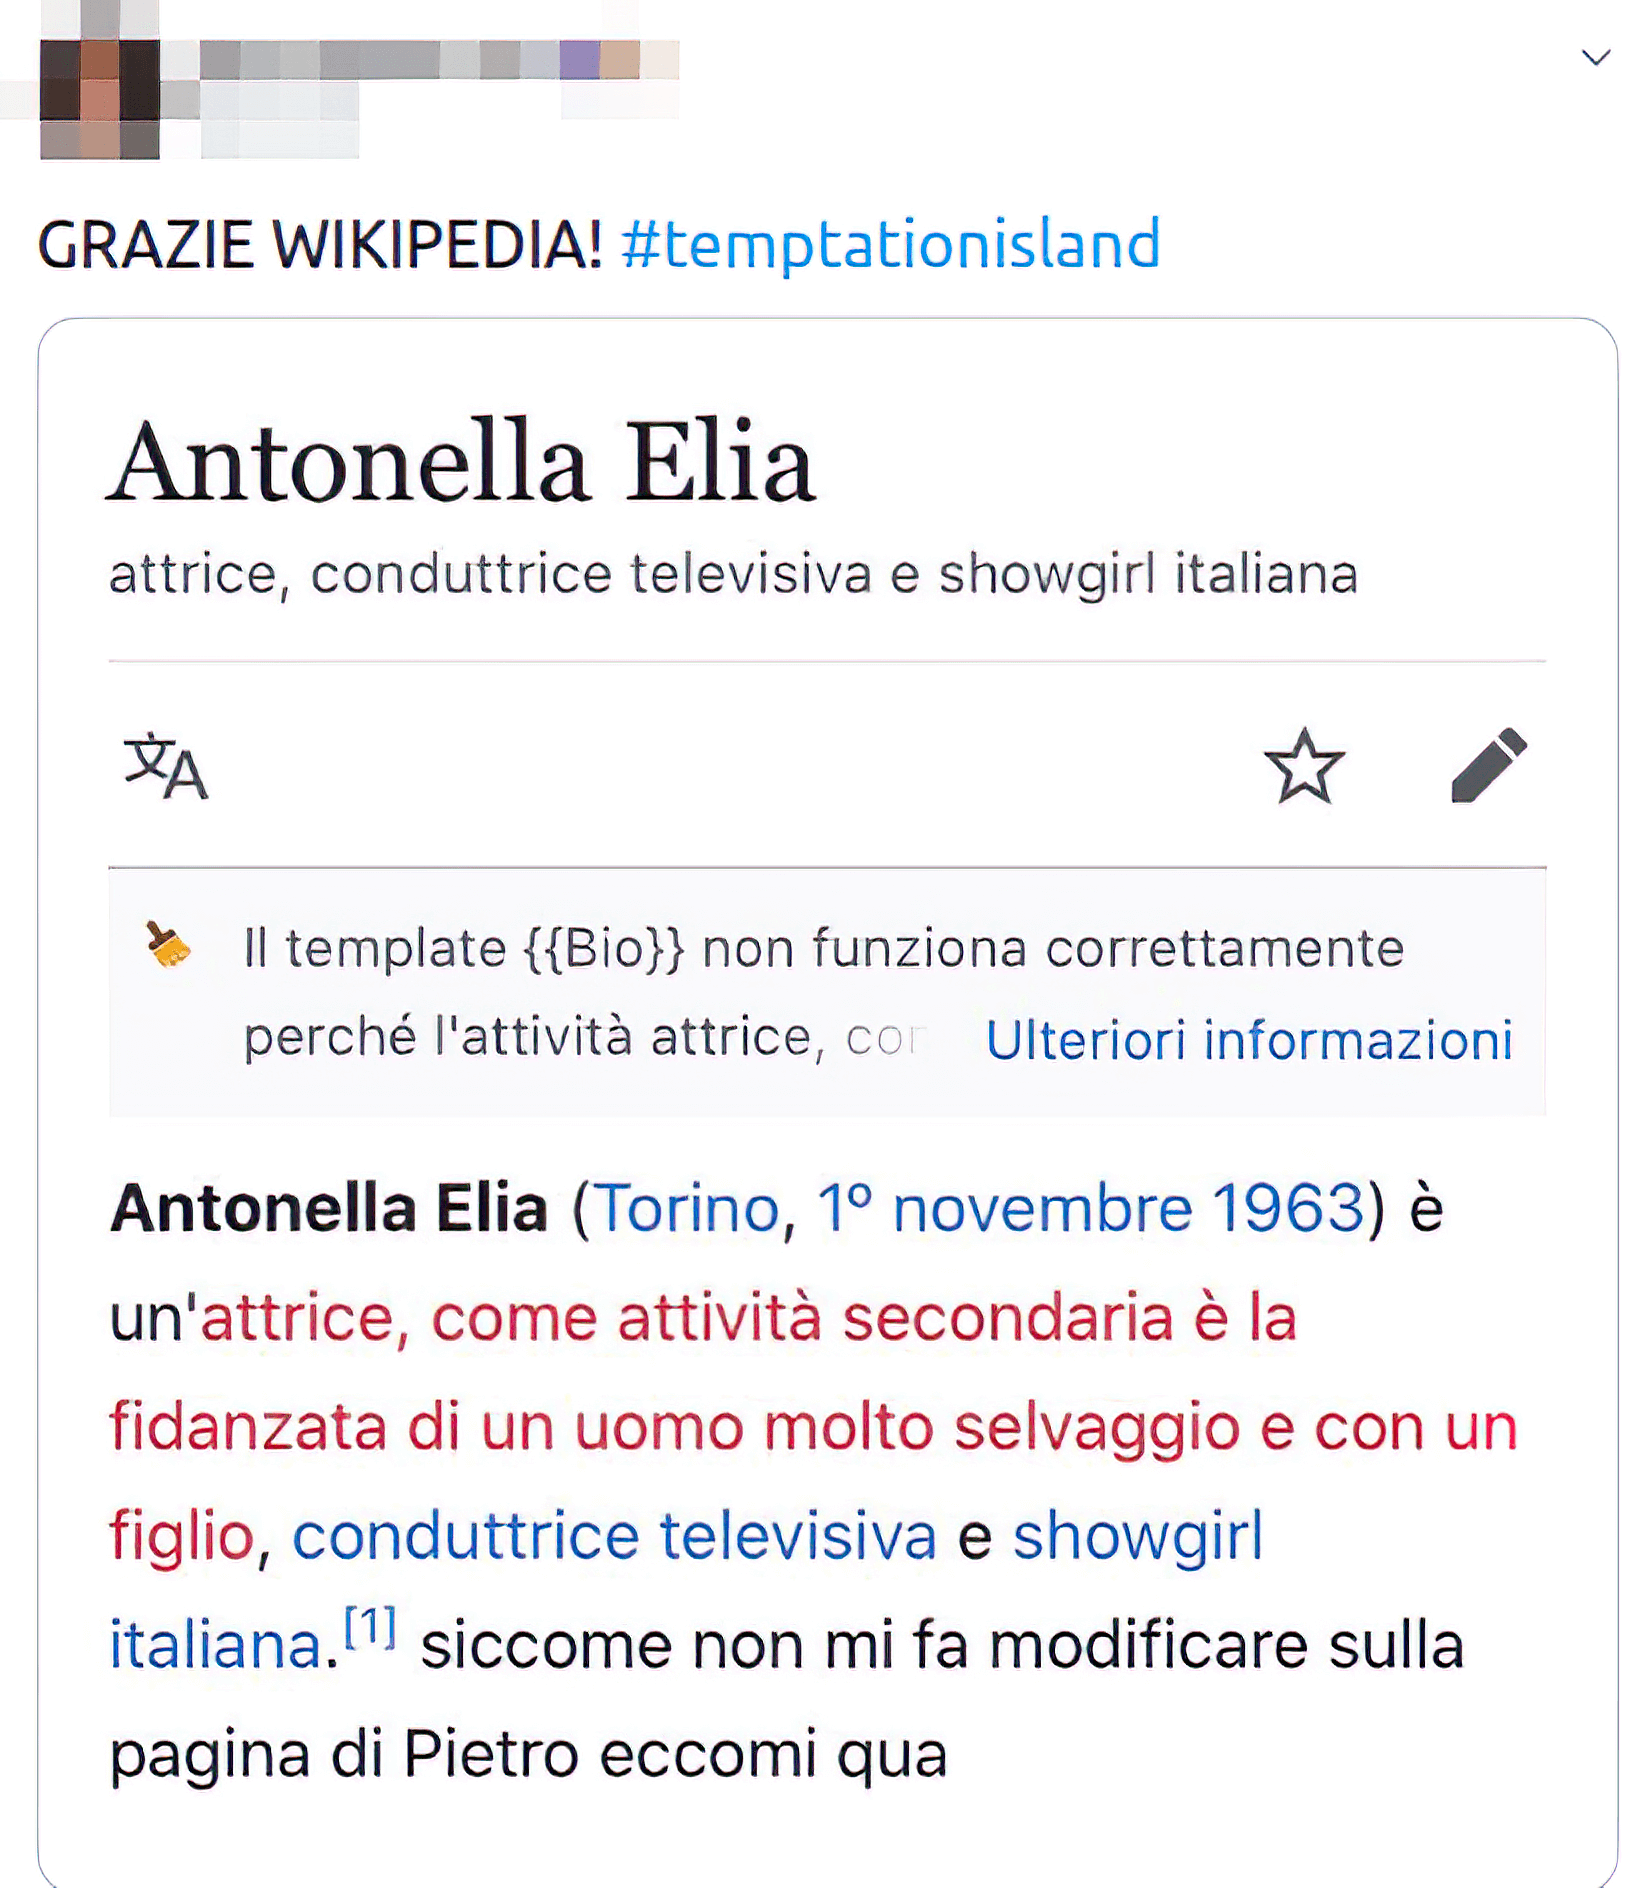 antonella elia wikipedia